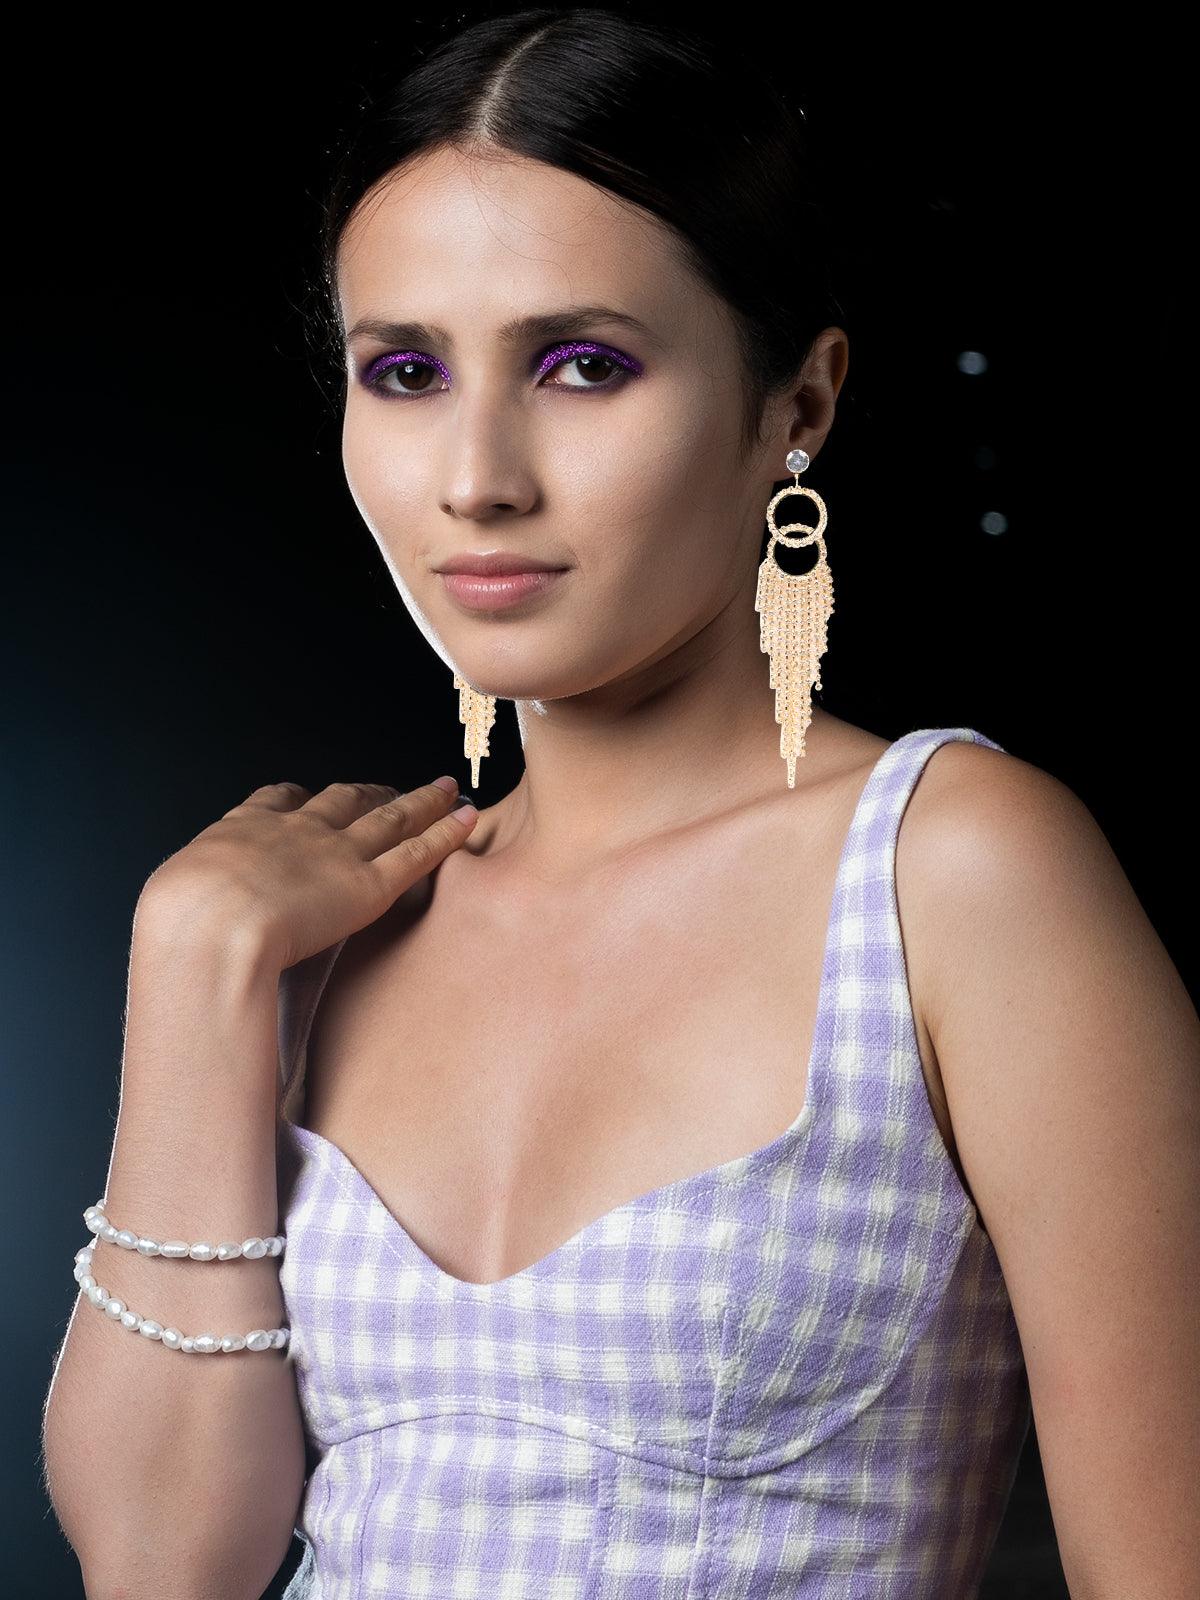 Women's Double Rounded Crystal-Embellished Tassel Drop Earrings - Odette